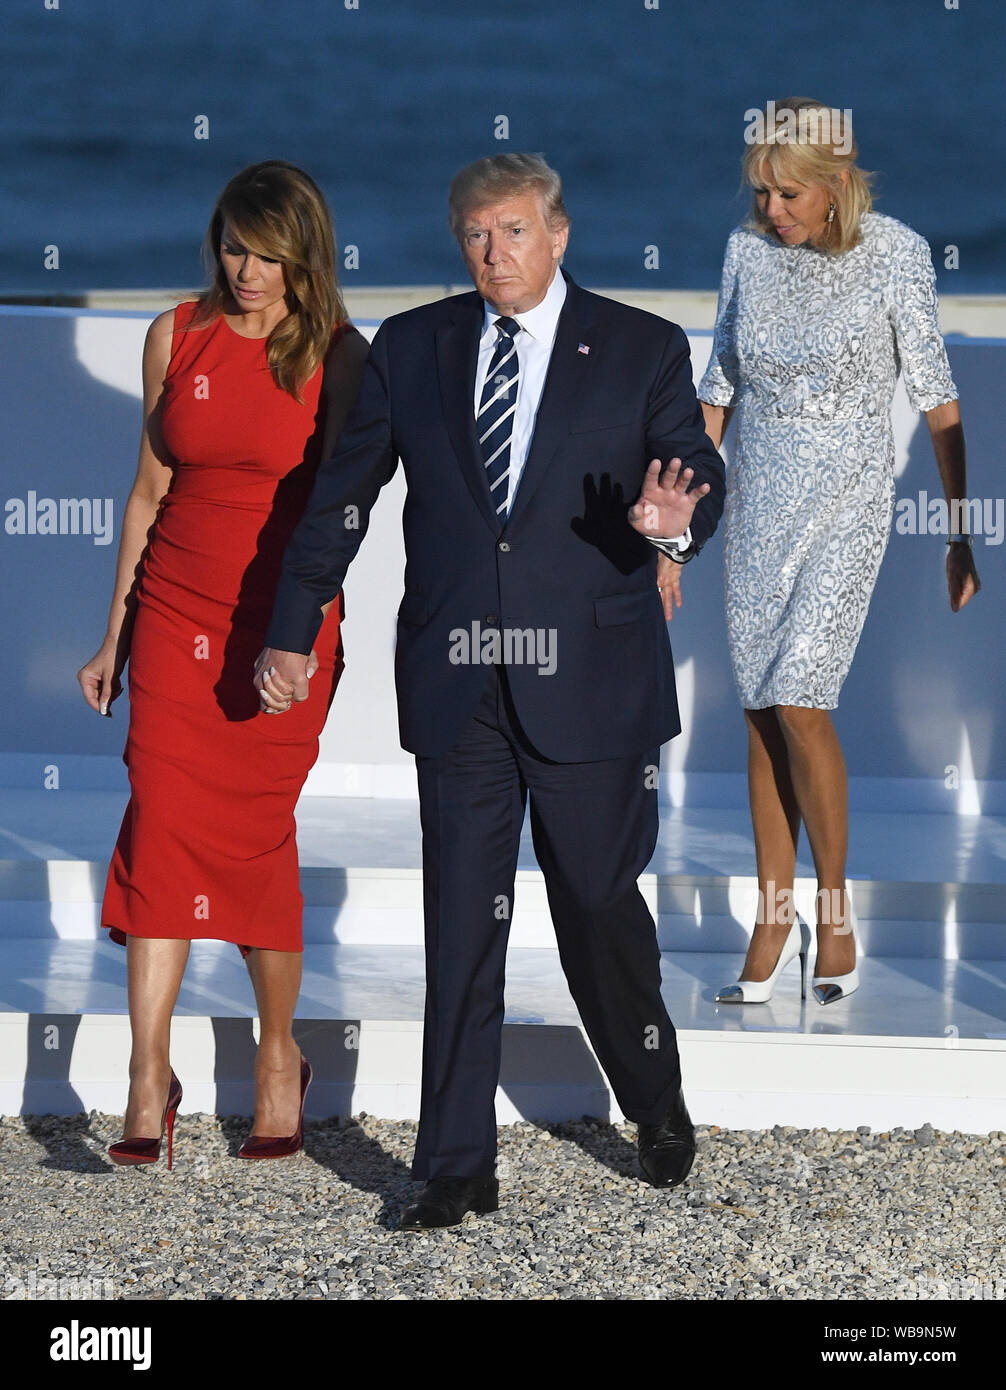 Melania Trump, gauche, le Président Donald Trump, Brigitte Macron, le président français Emmanuel Macron inscrivez-vous d'autres dirigeants du monde pour la photo de famille au sommet du G7 à Biarritz, France. Banque D'Images